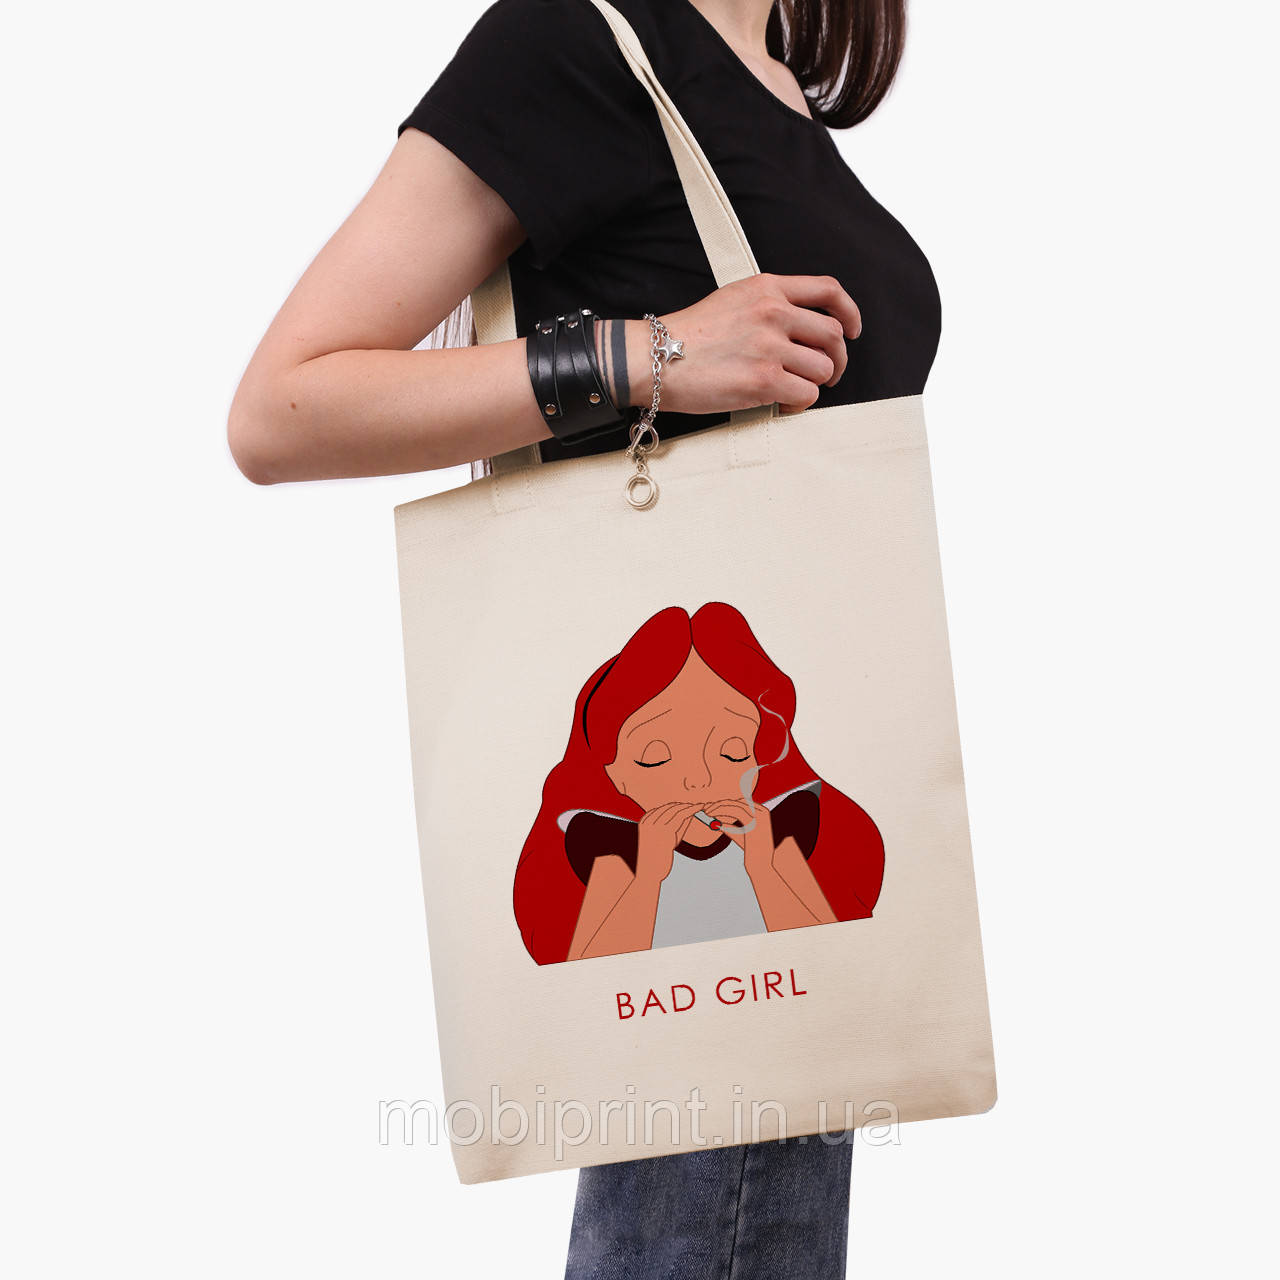 Еко сумка Аліса погана дівчинка Дісней (Alice is a bad girl Disney) (9227-1441-BG) бежева класік саржа